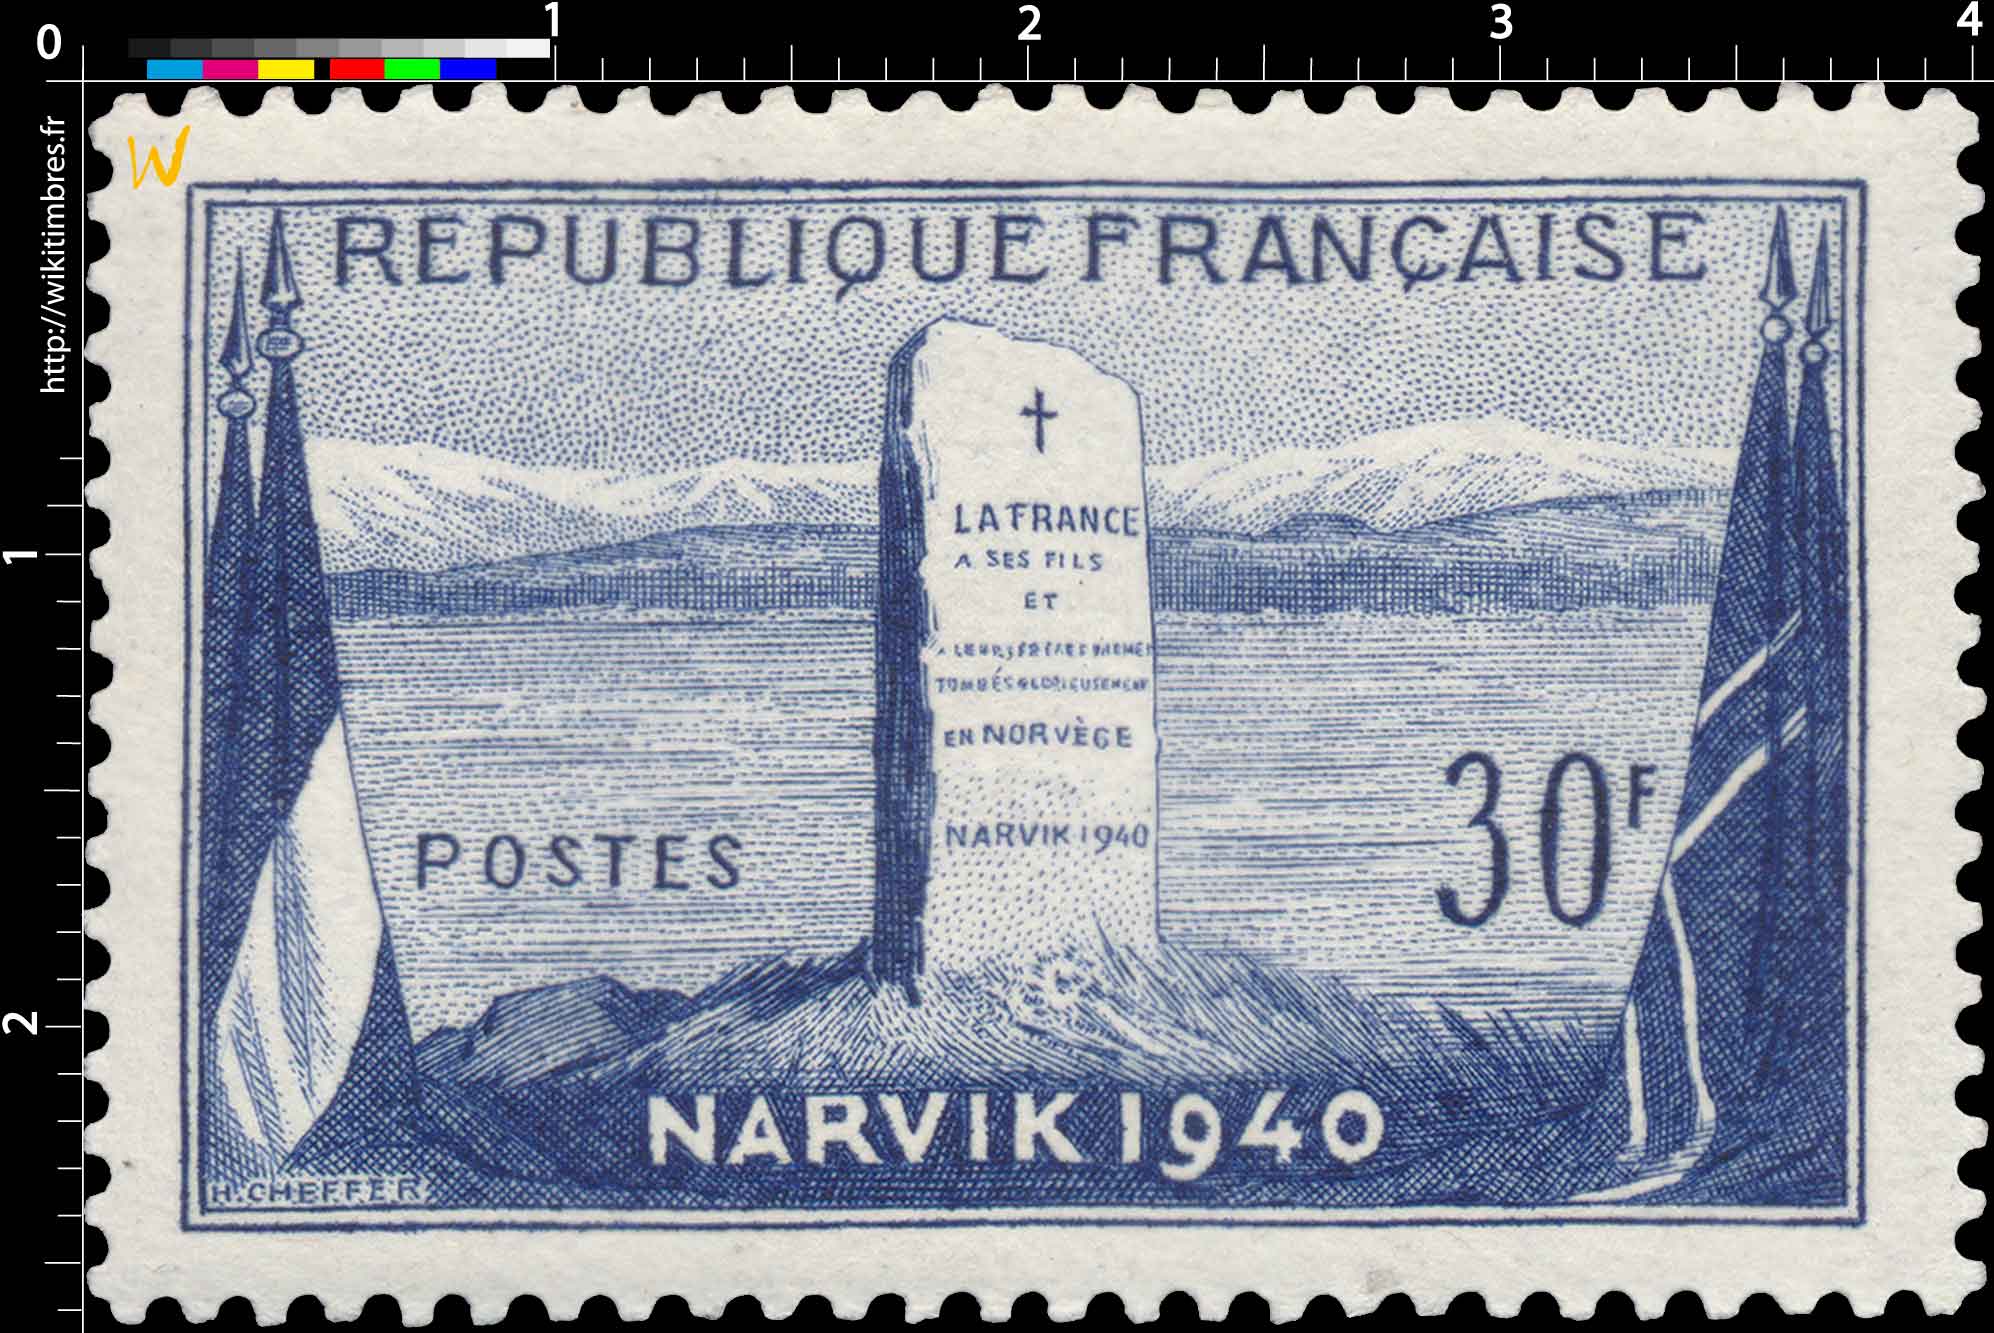 LA FRANCE A SES FILS ET A LEURS FRÈRES D'ARMES TOMBES GLORIEUSEMENT EN NORVÈGE NARVIK 1940